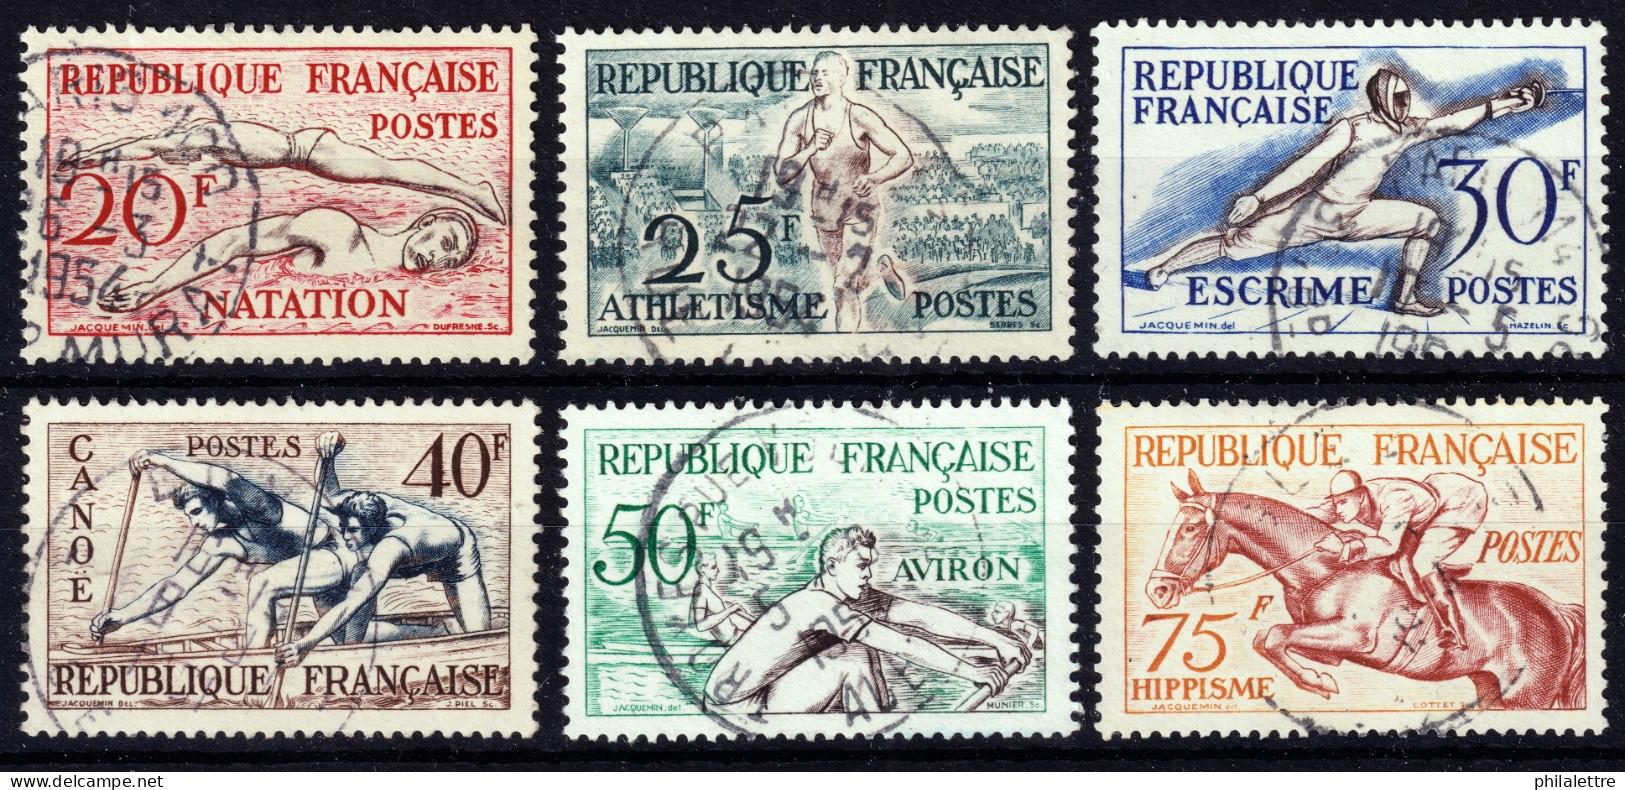 FRANCE - 1953 Yv.960/5 Jeux Olympiques D'Helsinki - Oblitérés TB - Oblitérés